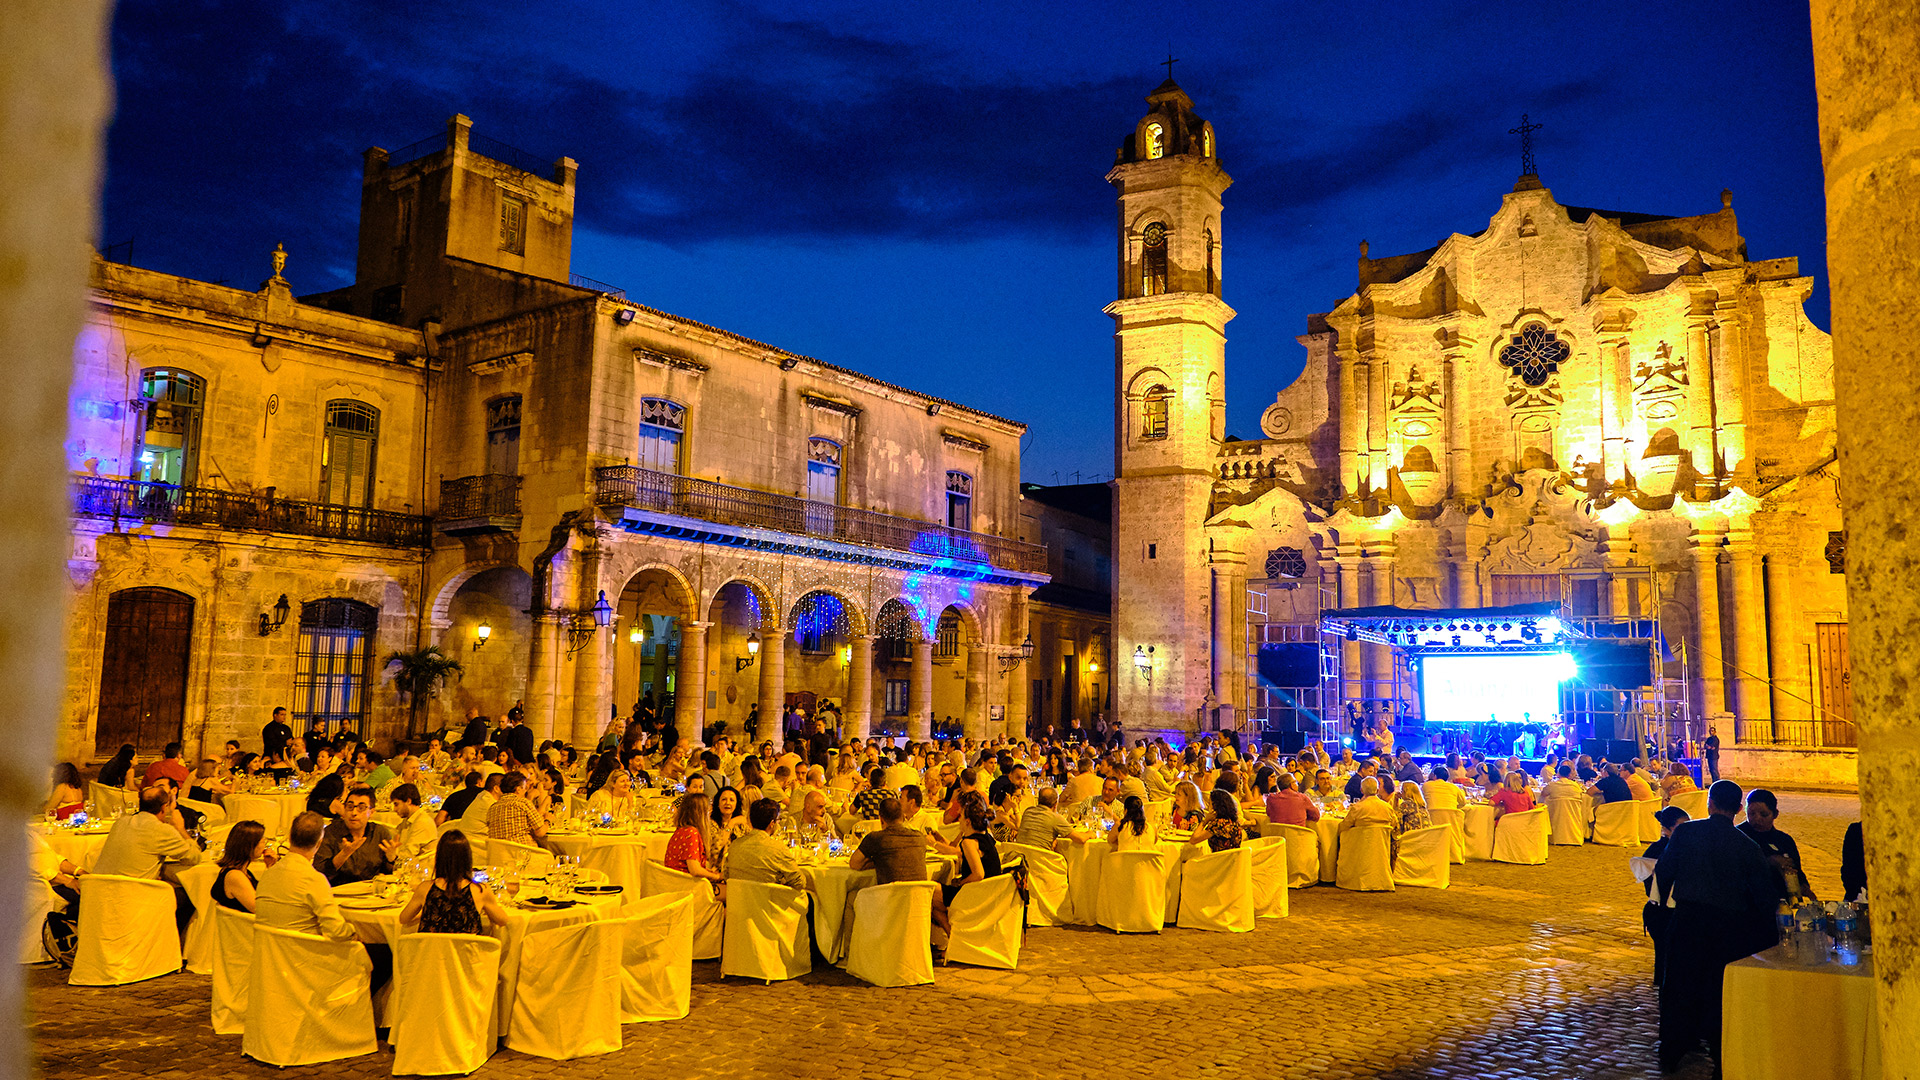 Gala Dinner at Plaza de la Catedral in Old Havana